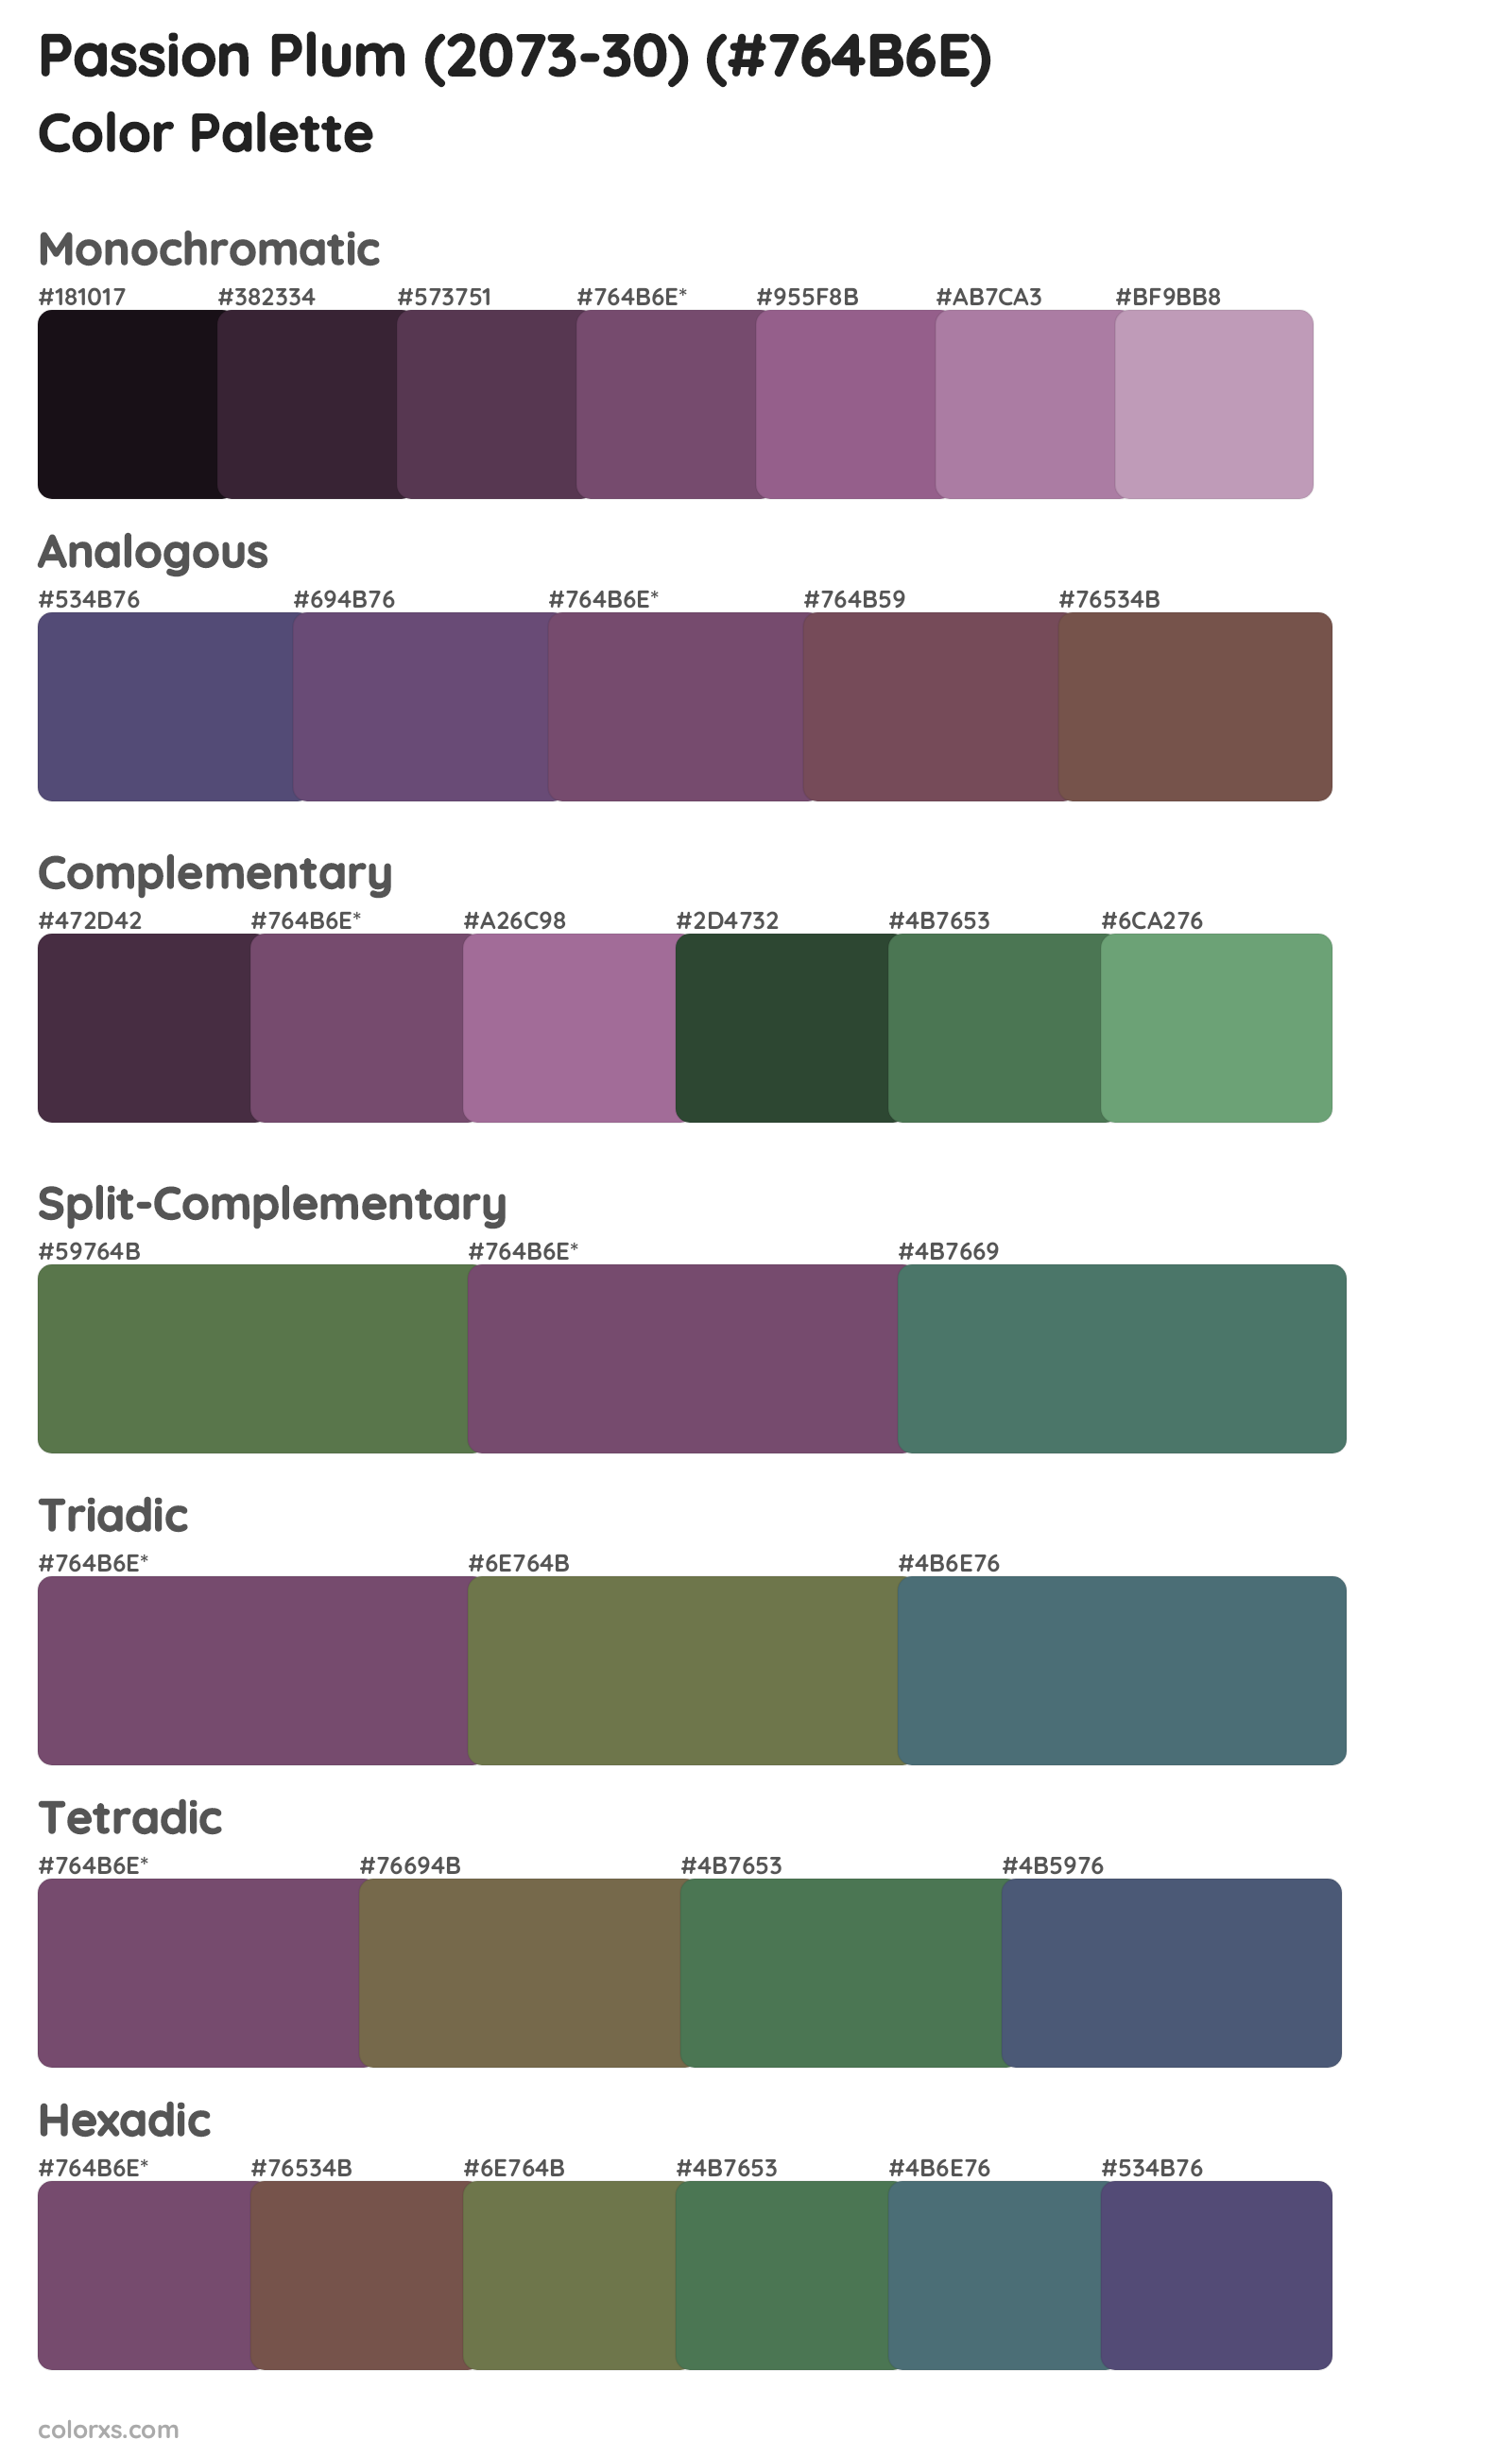 Passion Plum (2073-30) Color Scheme Palettes